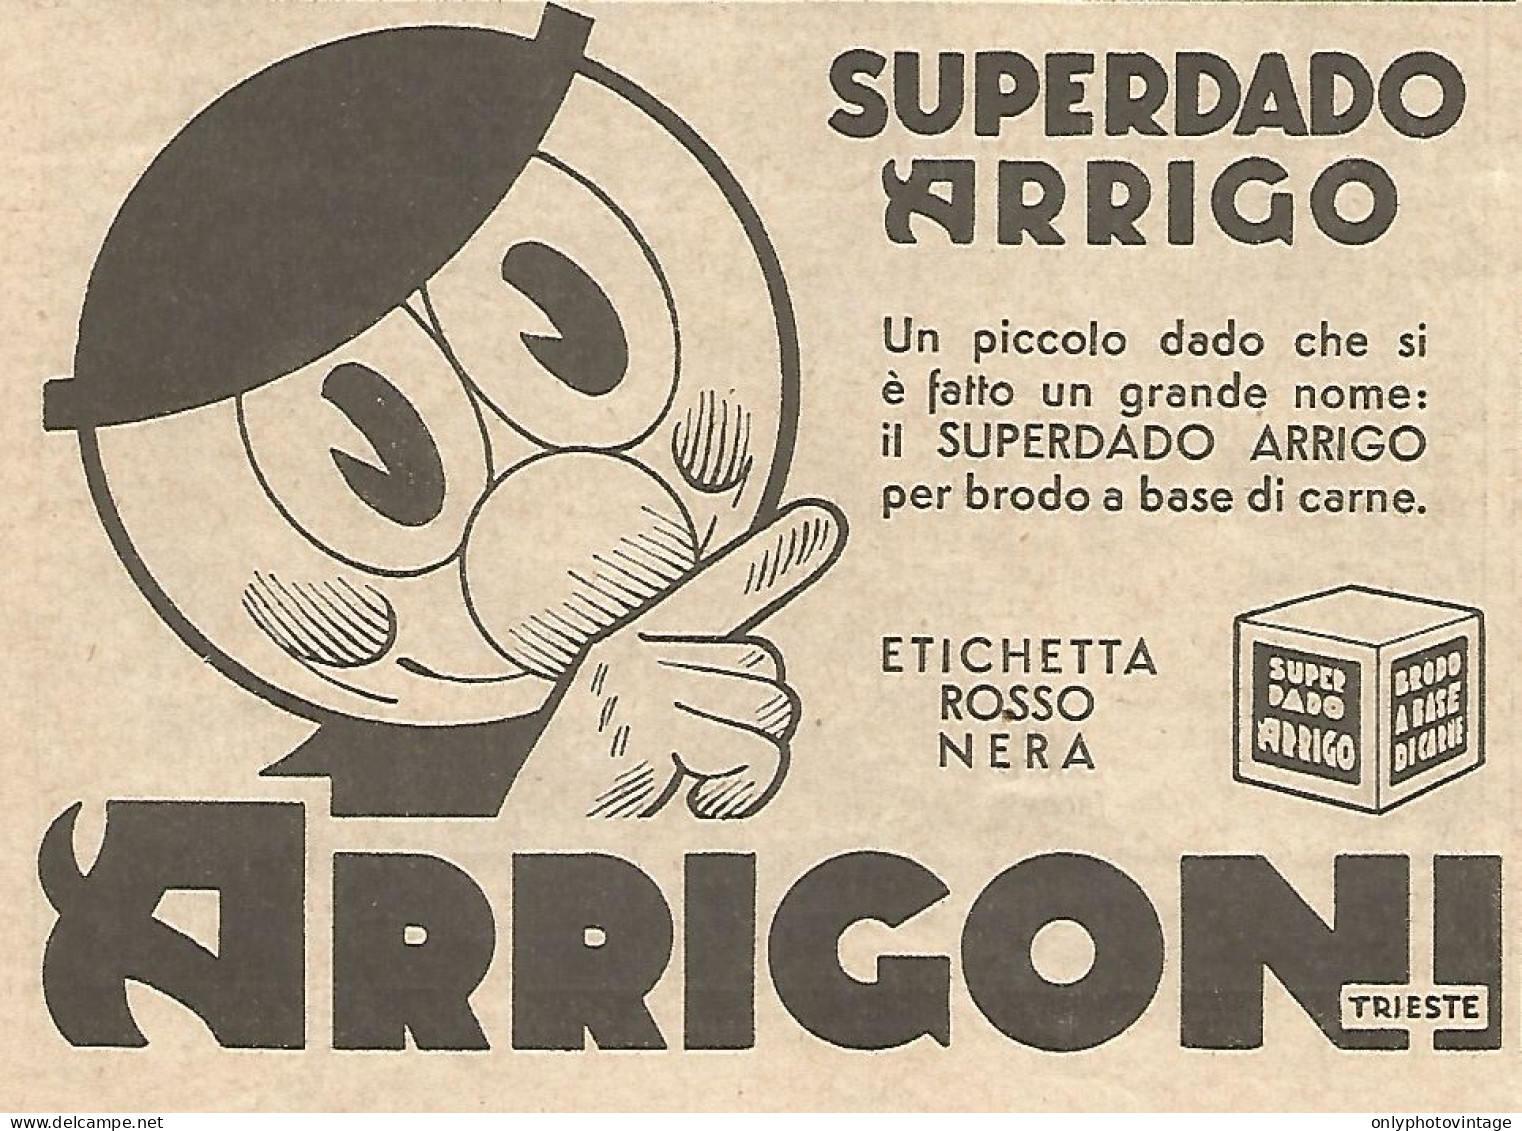 ARRIGONI - Super Dado Arrigo - Pubblicità Del 1934 - Vintage Advertising - Werbung